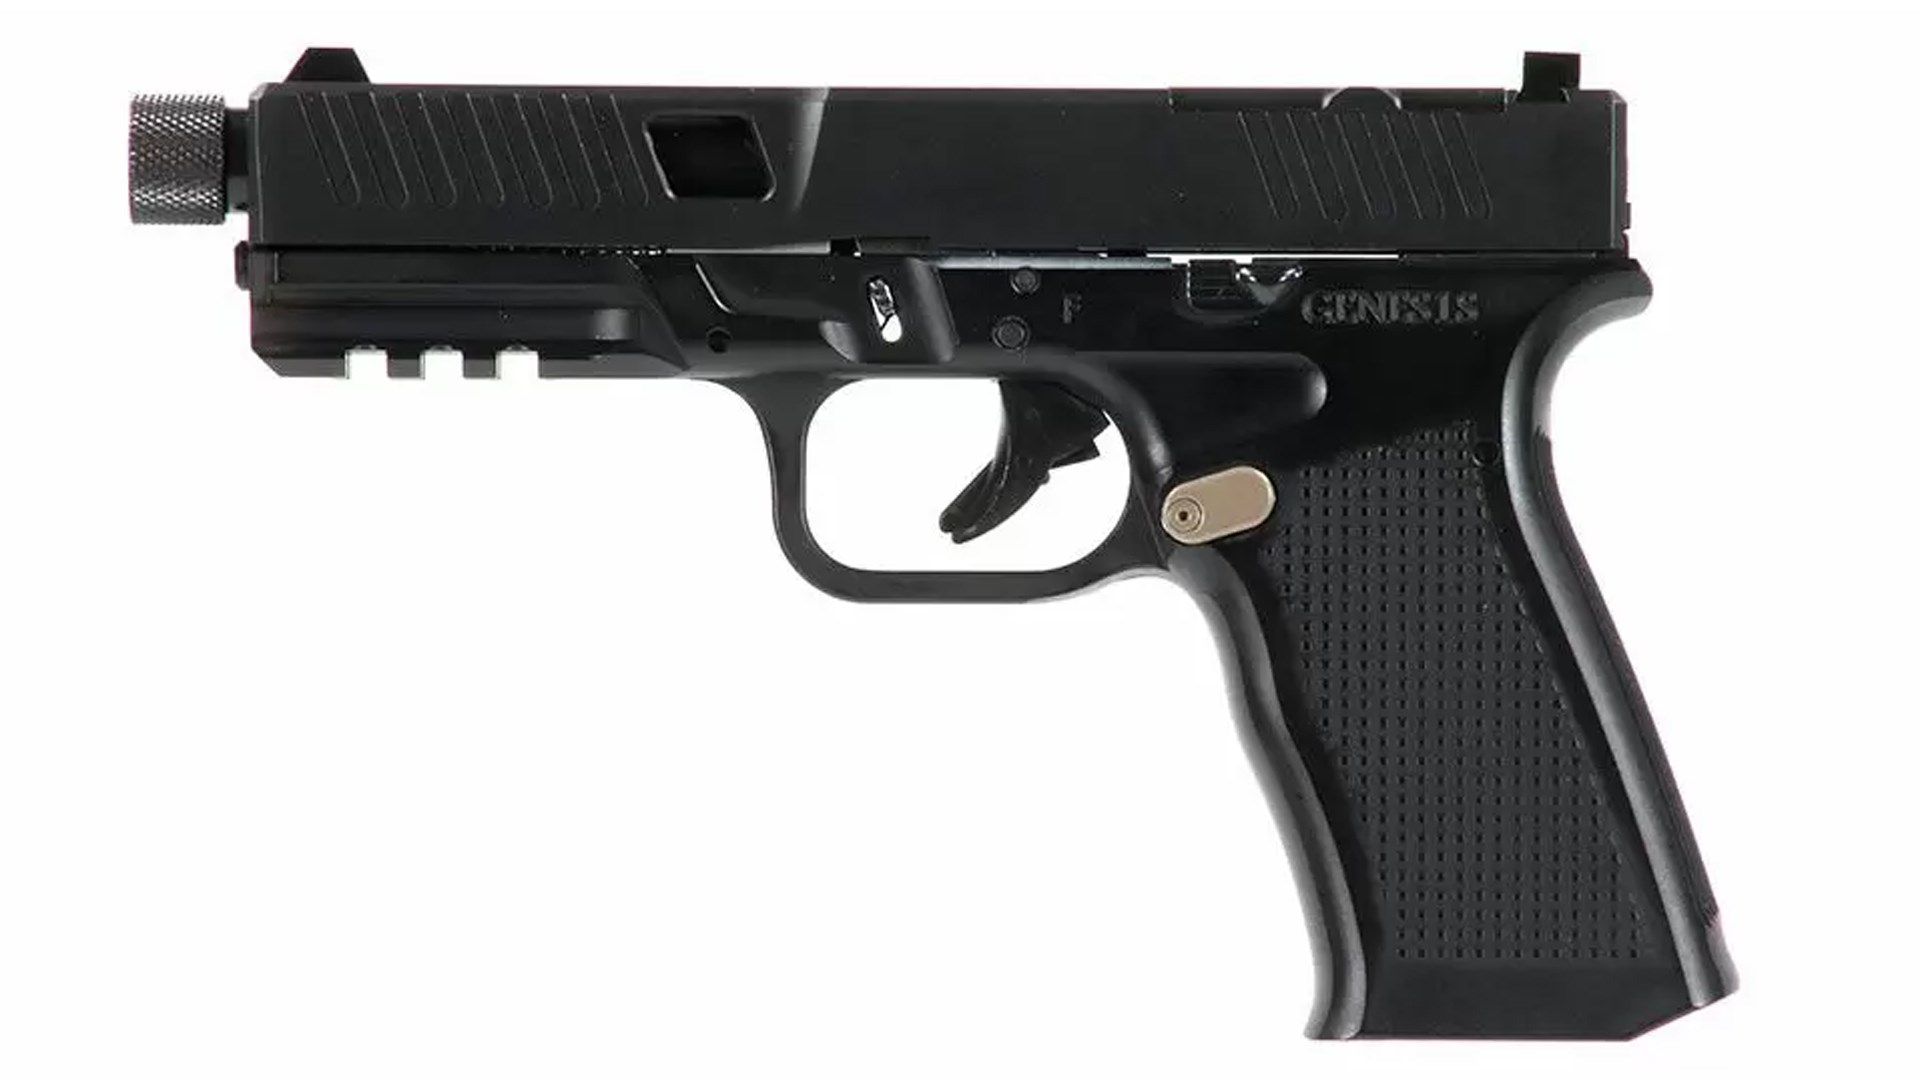 Left side of the black Bear Creek Arsenal Genes1s II pistol.